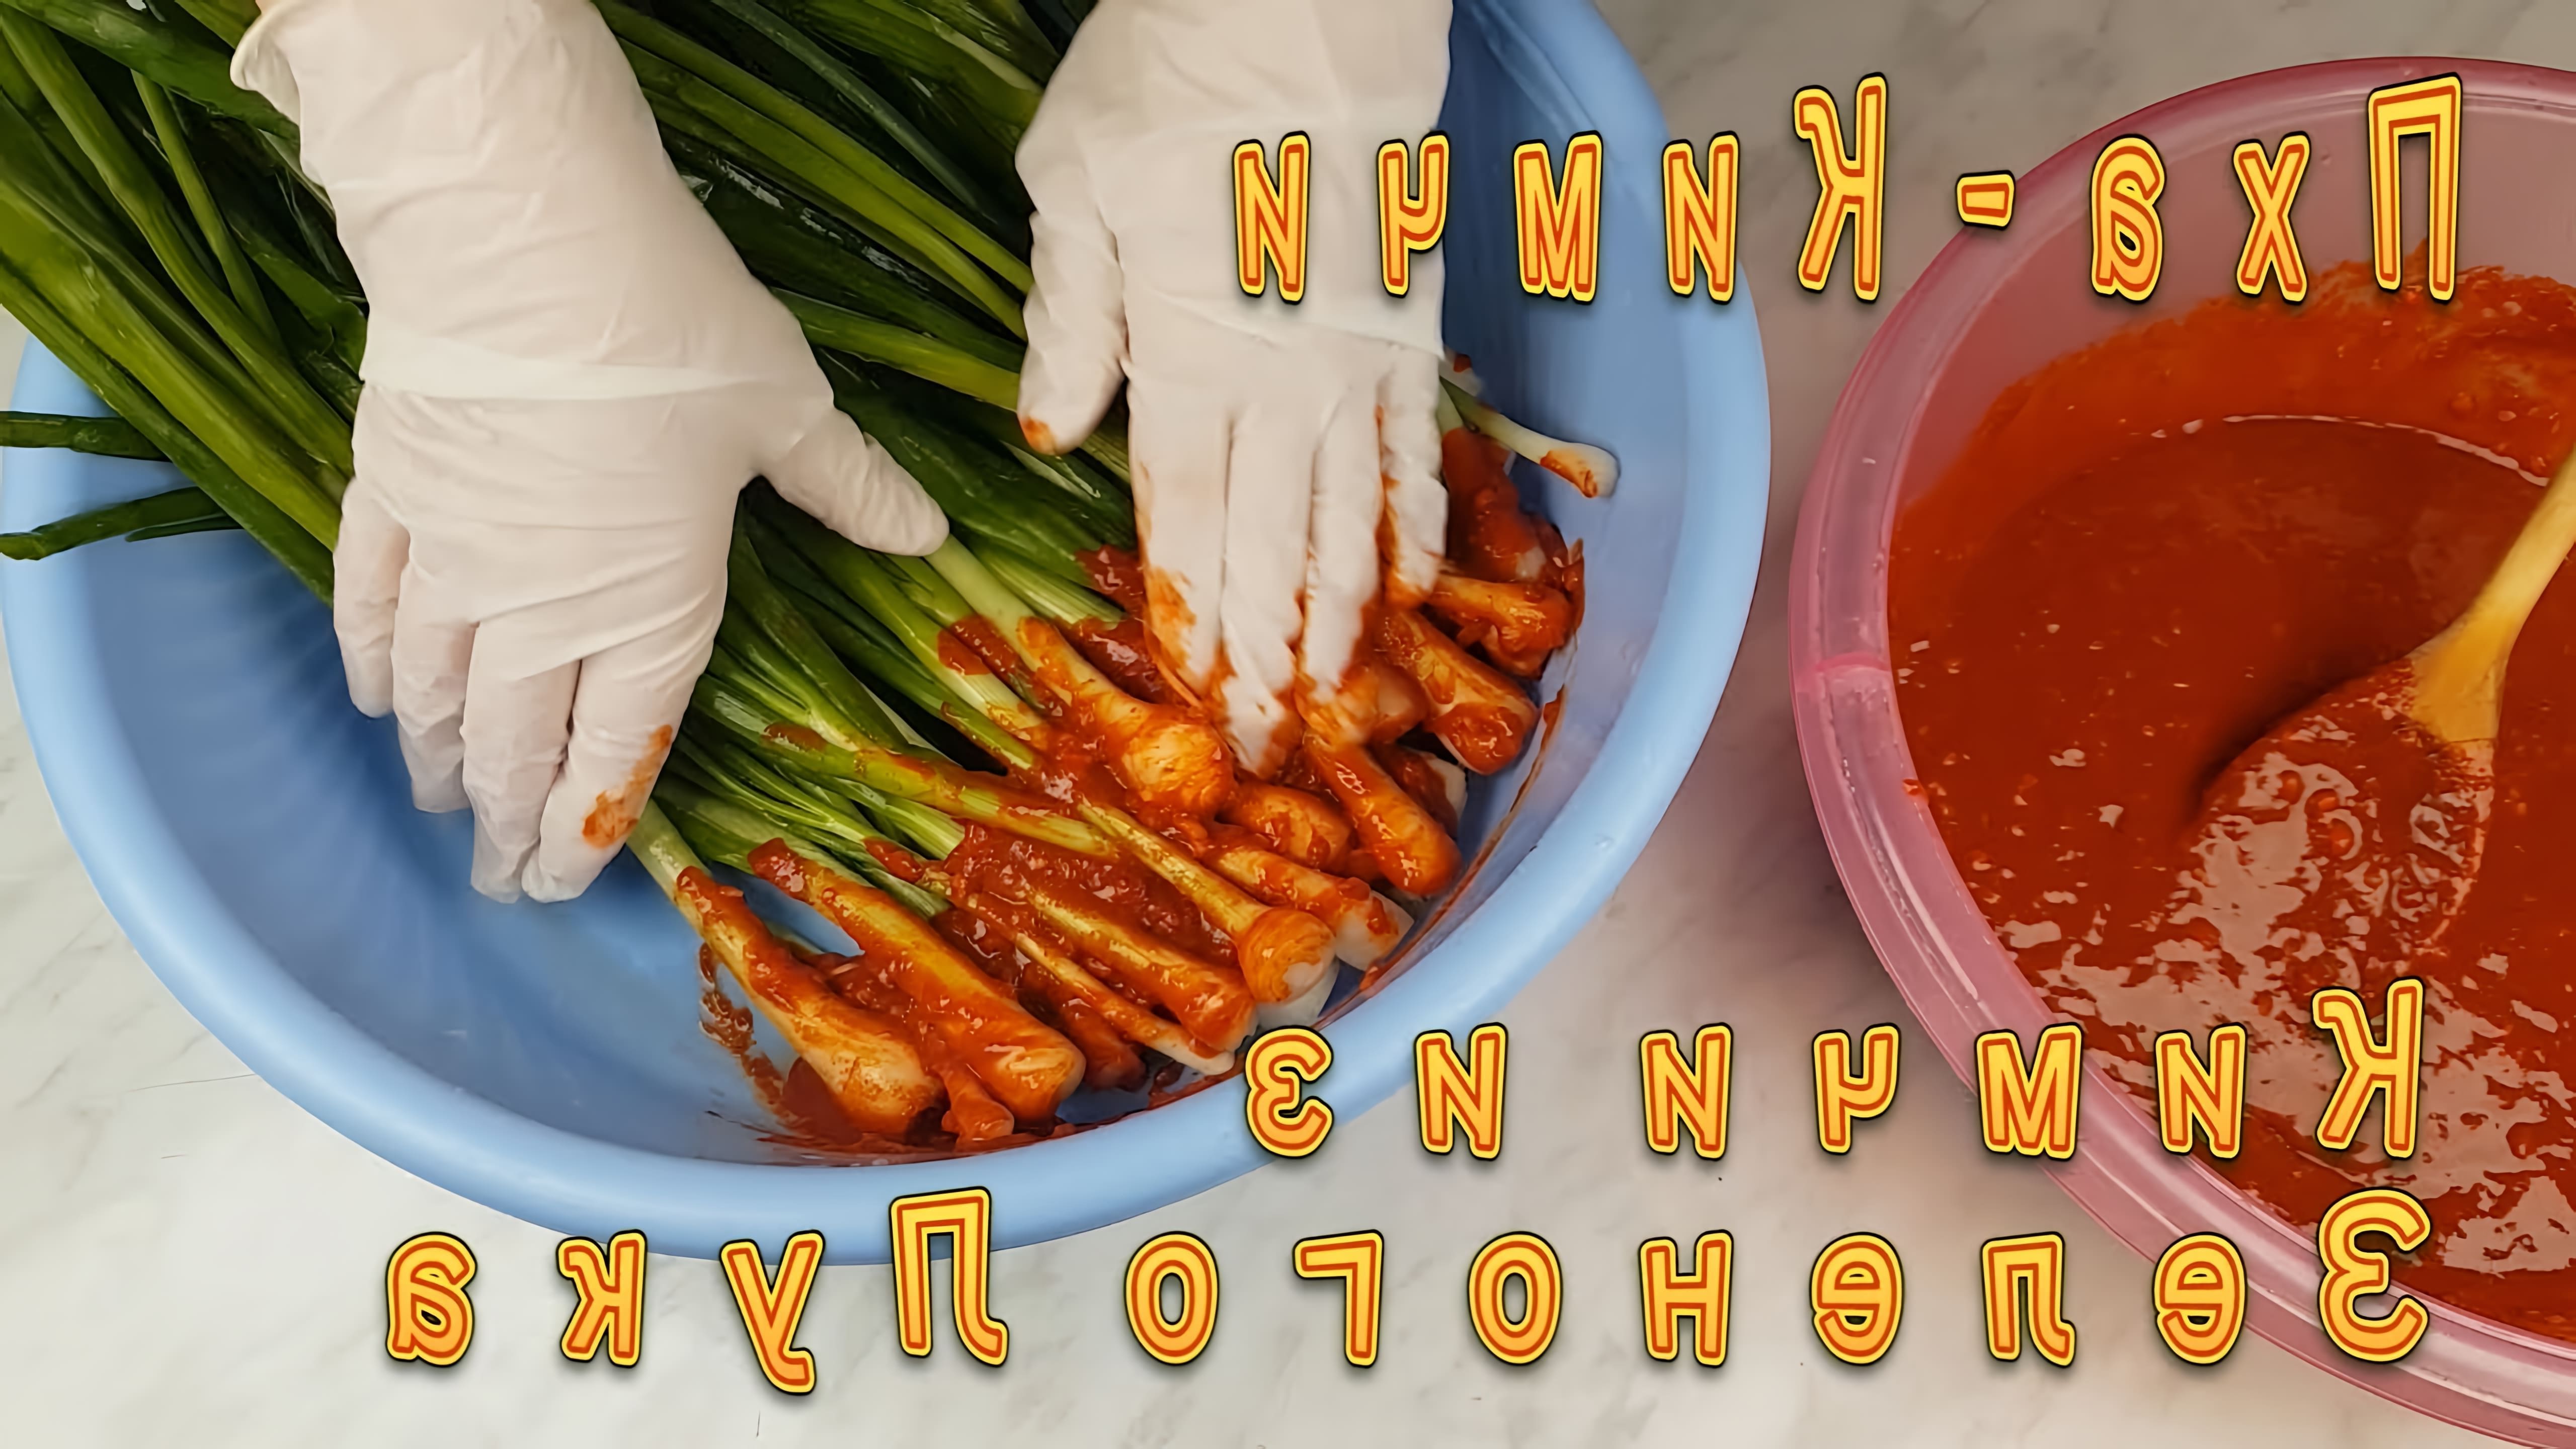 В этом видео демонстрируется рецепт приготовления корейского кимчи из зеленого лука